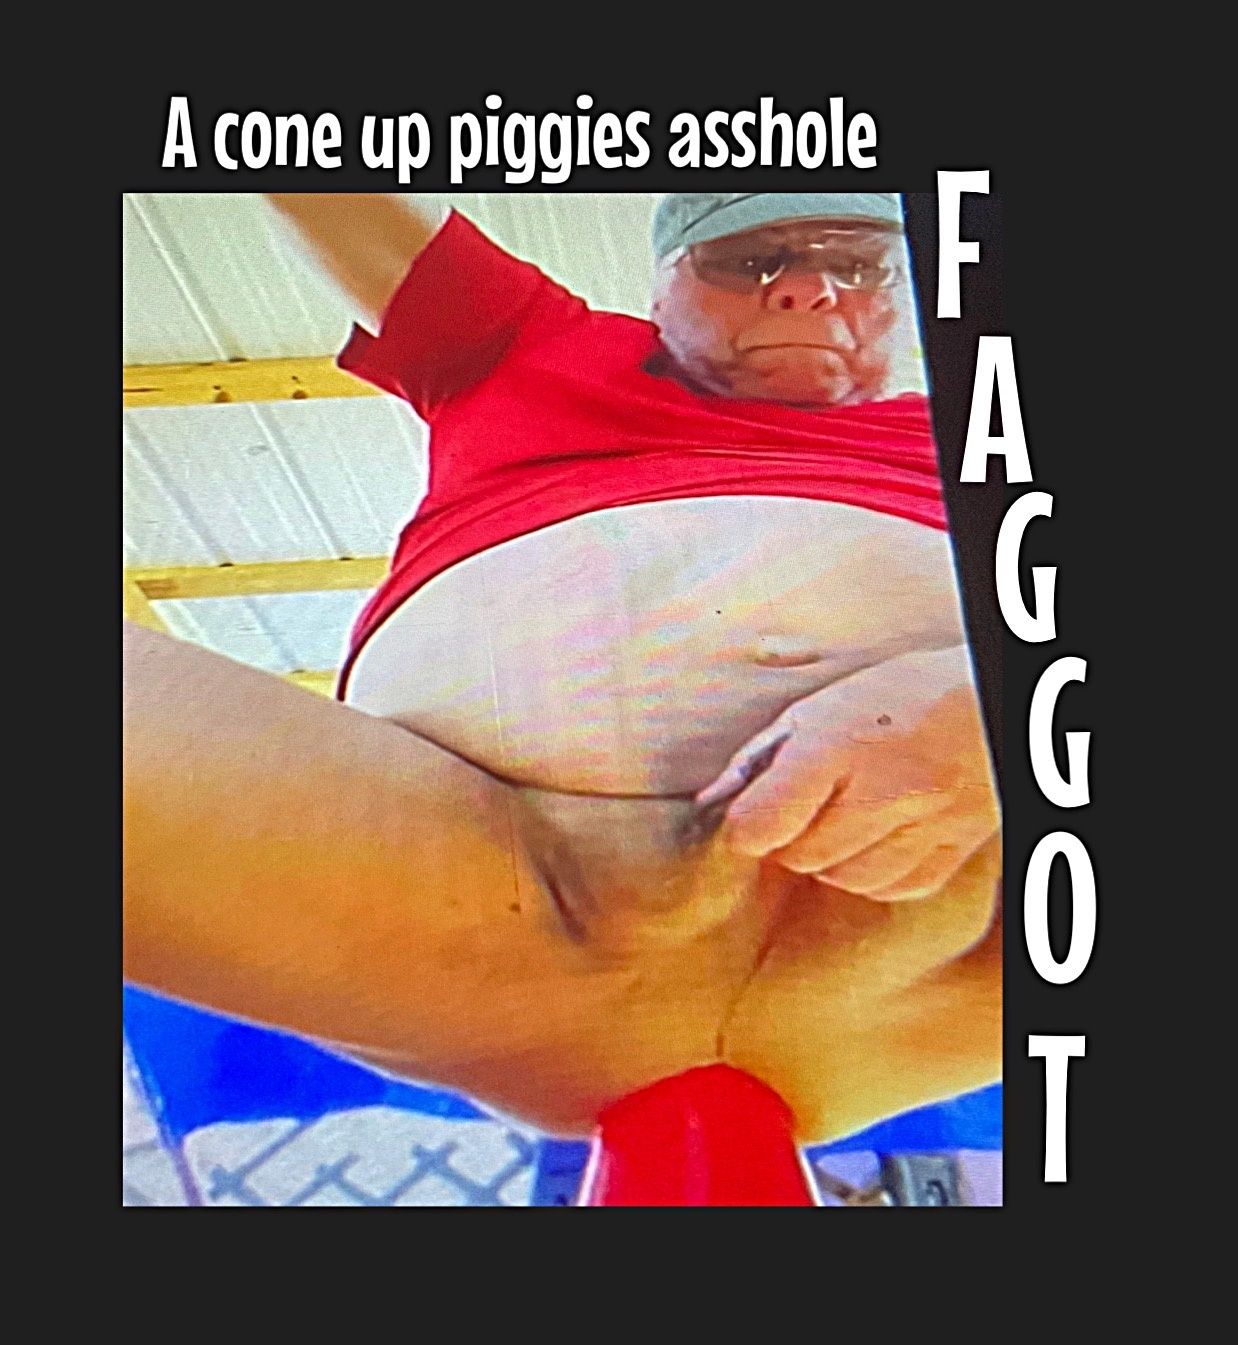 The faggott piggy